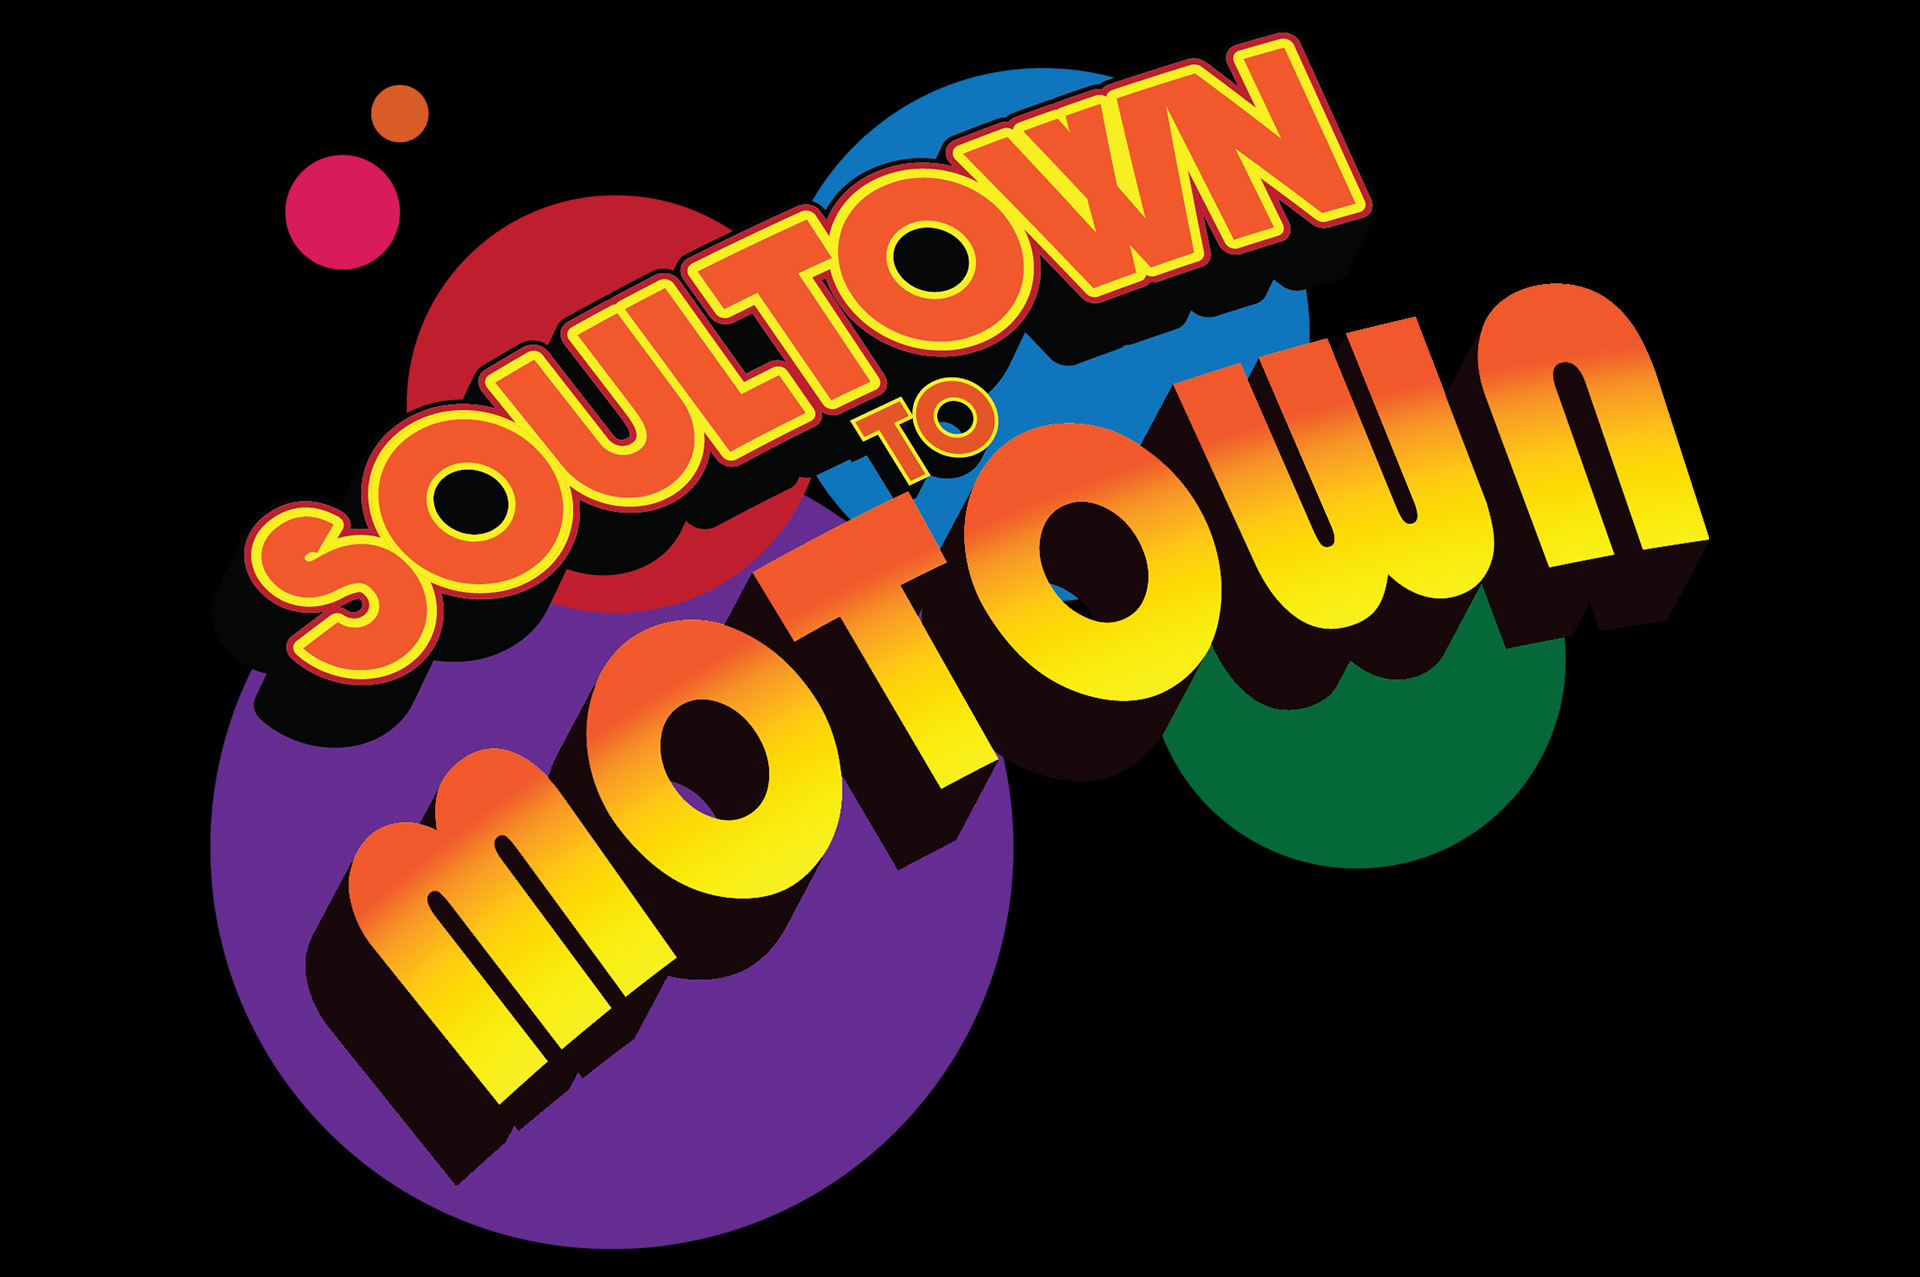 soultown2motown-homepage-01